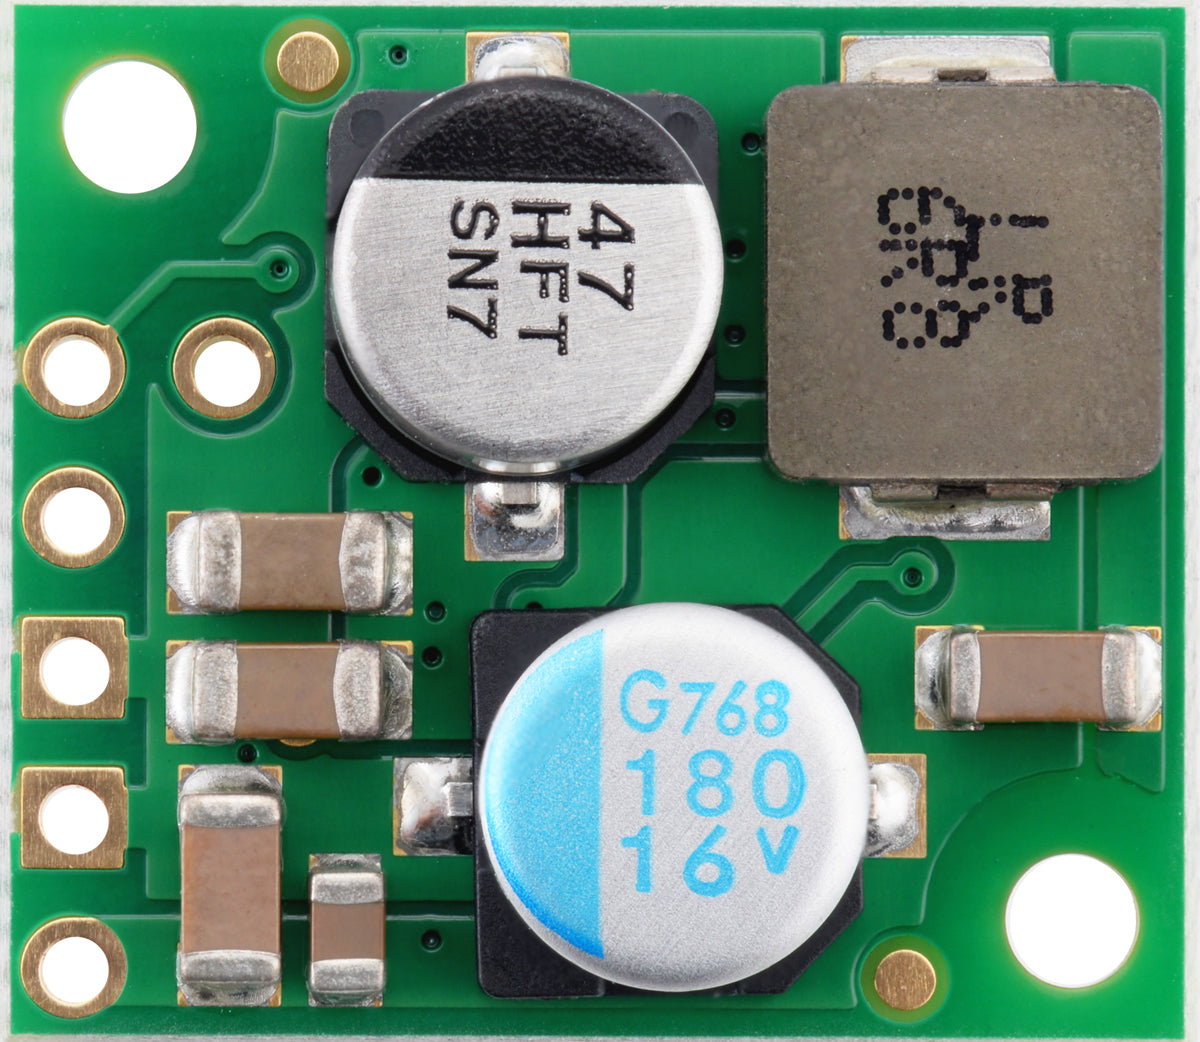 9V, 2.6A Step-Down Voltage Regulator D36V28F9